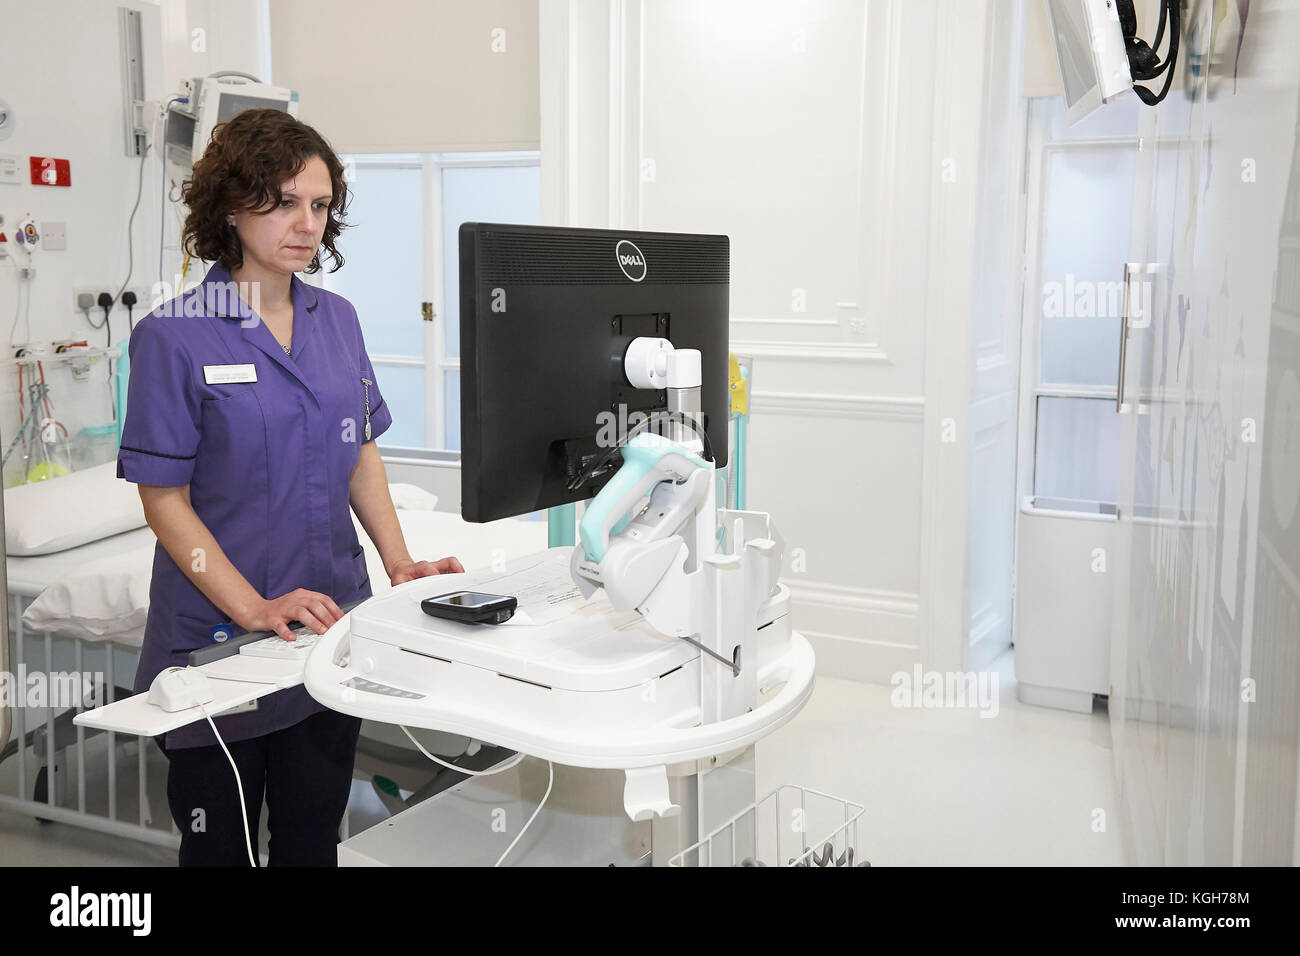 Una enfermera la comprobación de la información de un ordenador en un hospital. Foto de stock